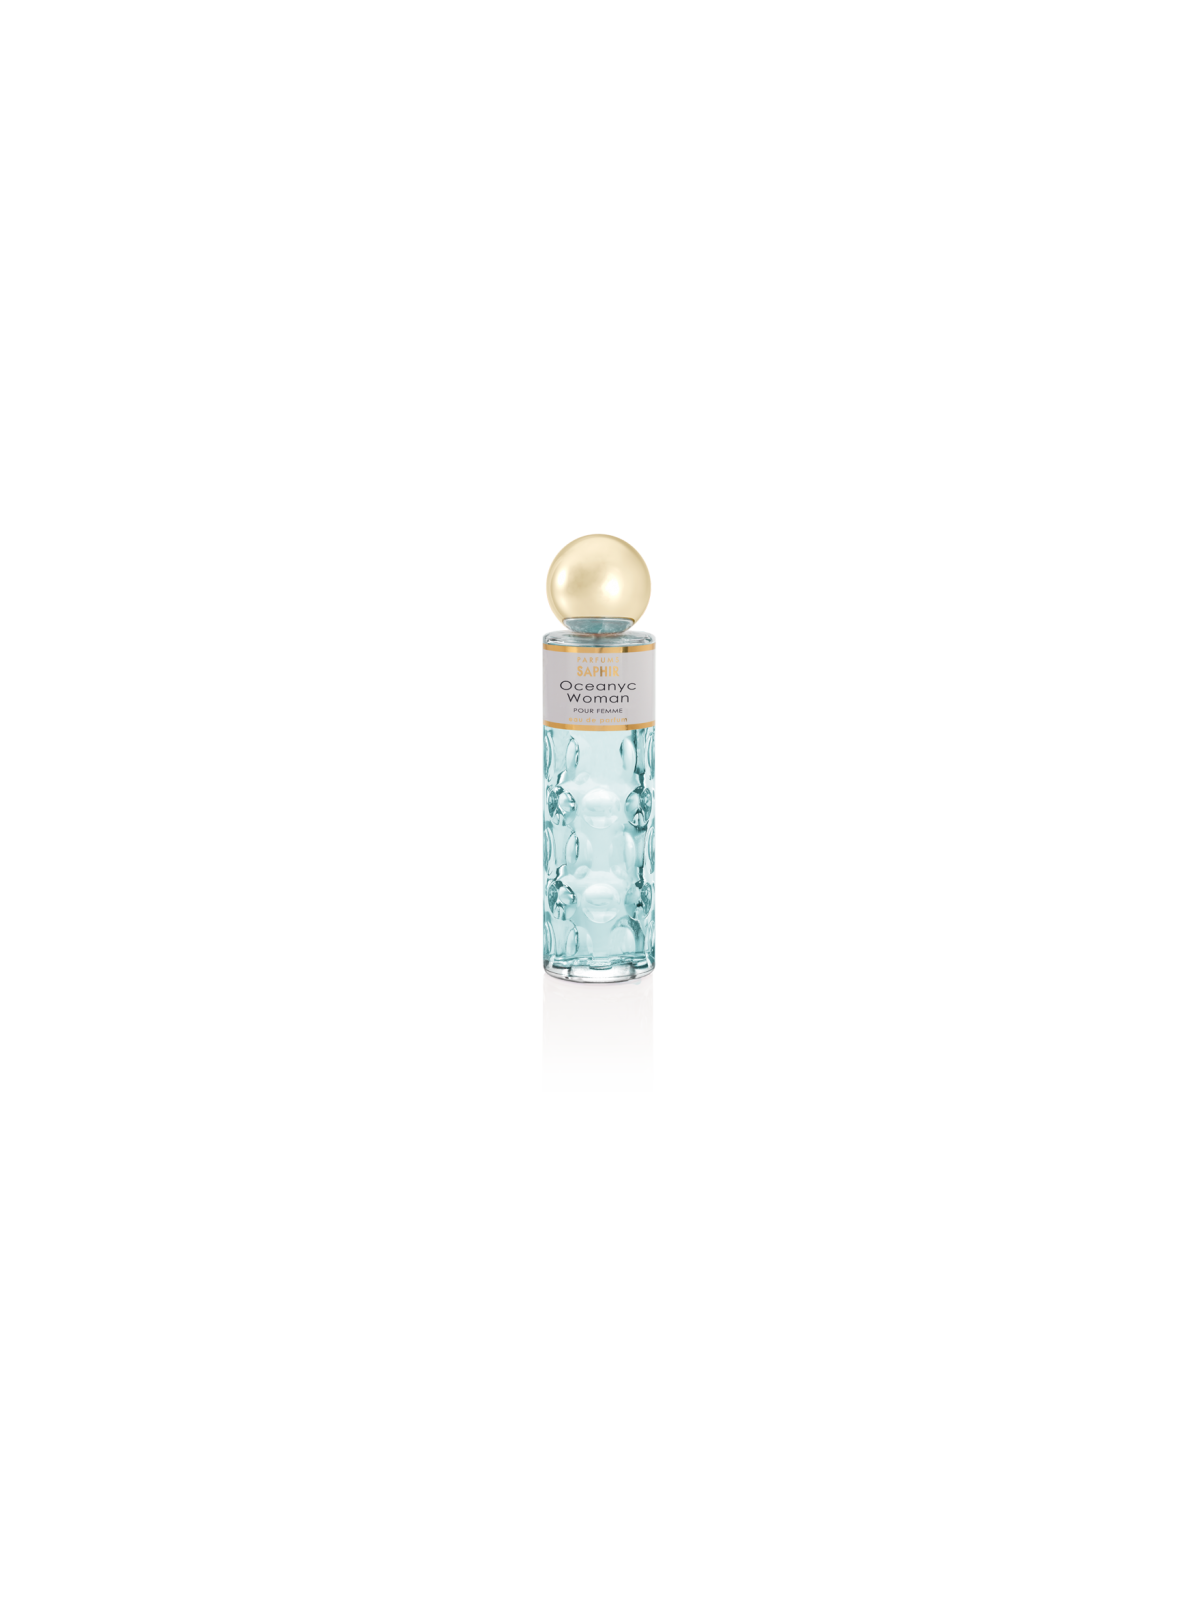 Comprar Perfume SAPHIR Oceanyc woman 200ml. en Perfumes para mujer por sólo 13,90 € o un precio específico de 13,90 € en Thalie Care